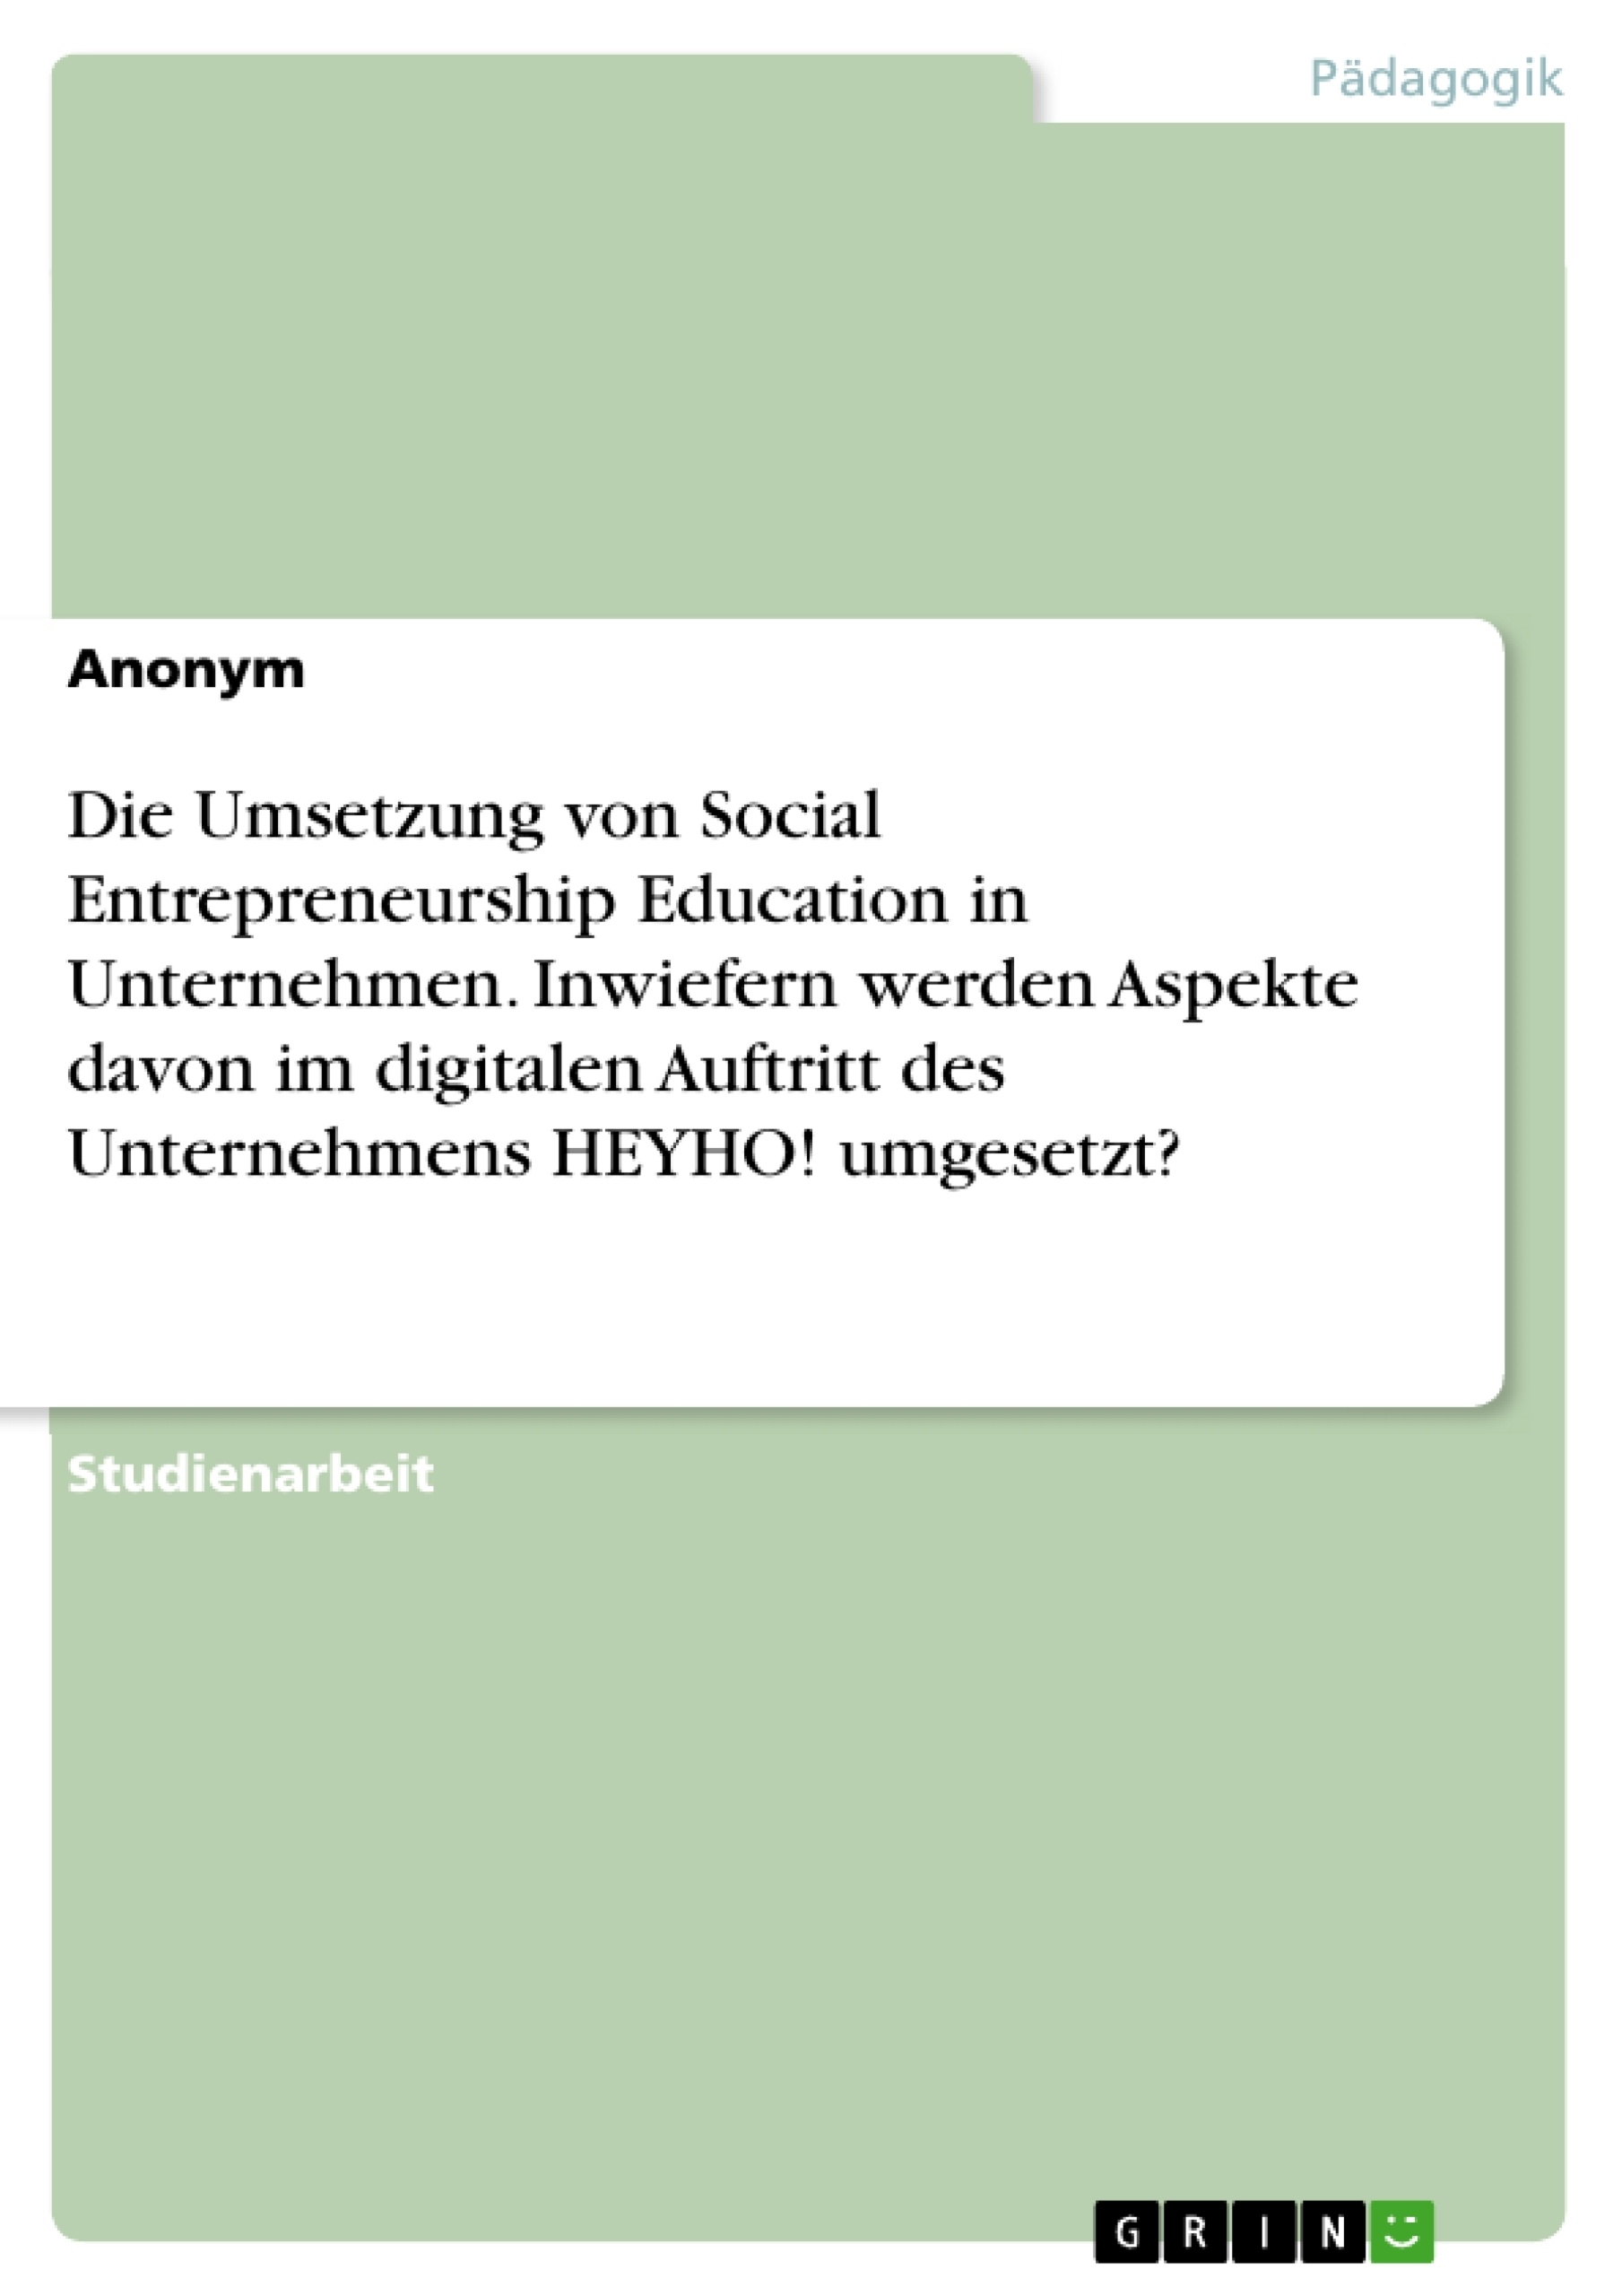 Title: Die Umsetzung von Social Entrepreneurship Education in Unternehmen. Inwiefern werden Aspekte davon im digitalen Auftritt des Unternehmens HEYHO! umgesetzt?